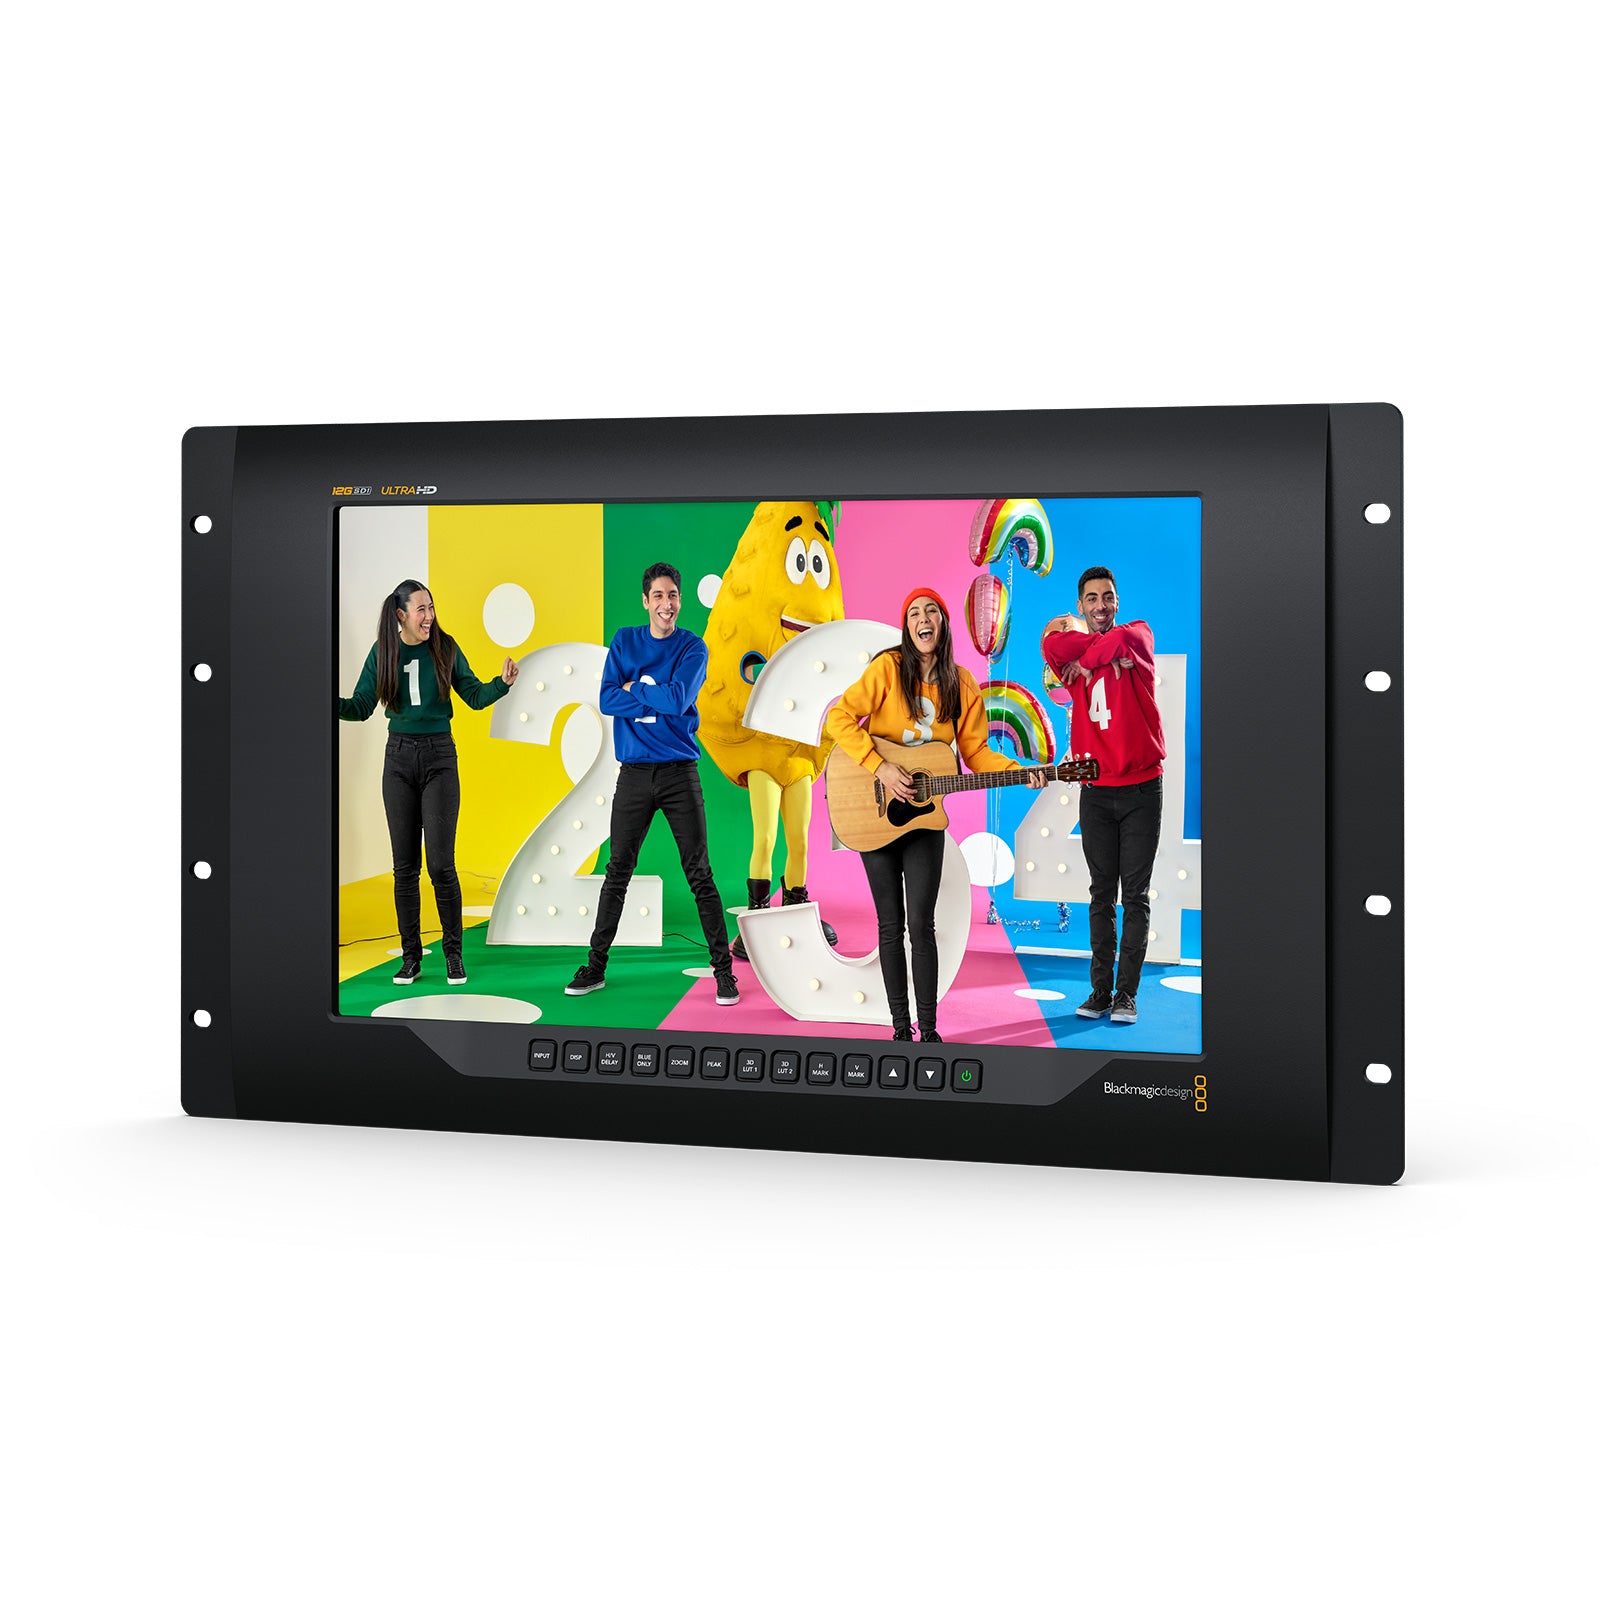 Blackmagic Design(ブラックマジックデザイン) ビデオモニター SmartView 4K G3 HDL-SMTV4K12G3